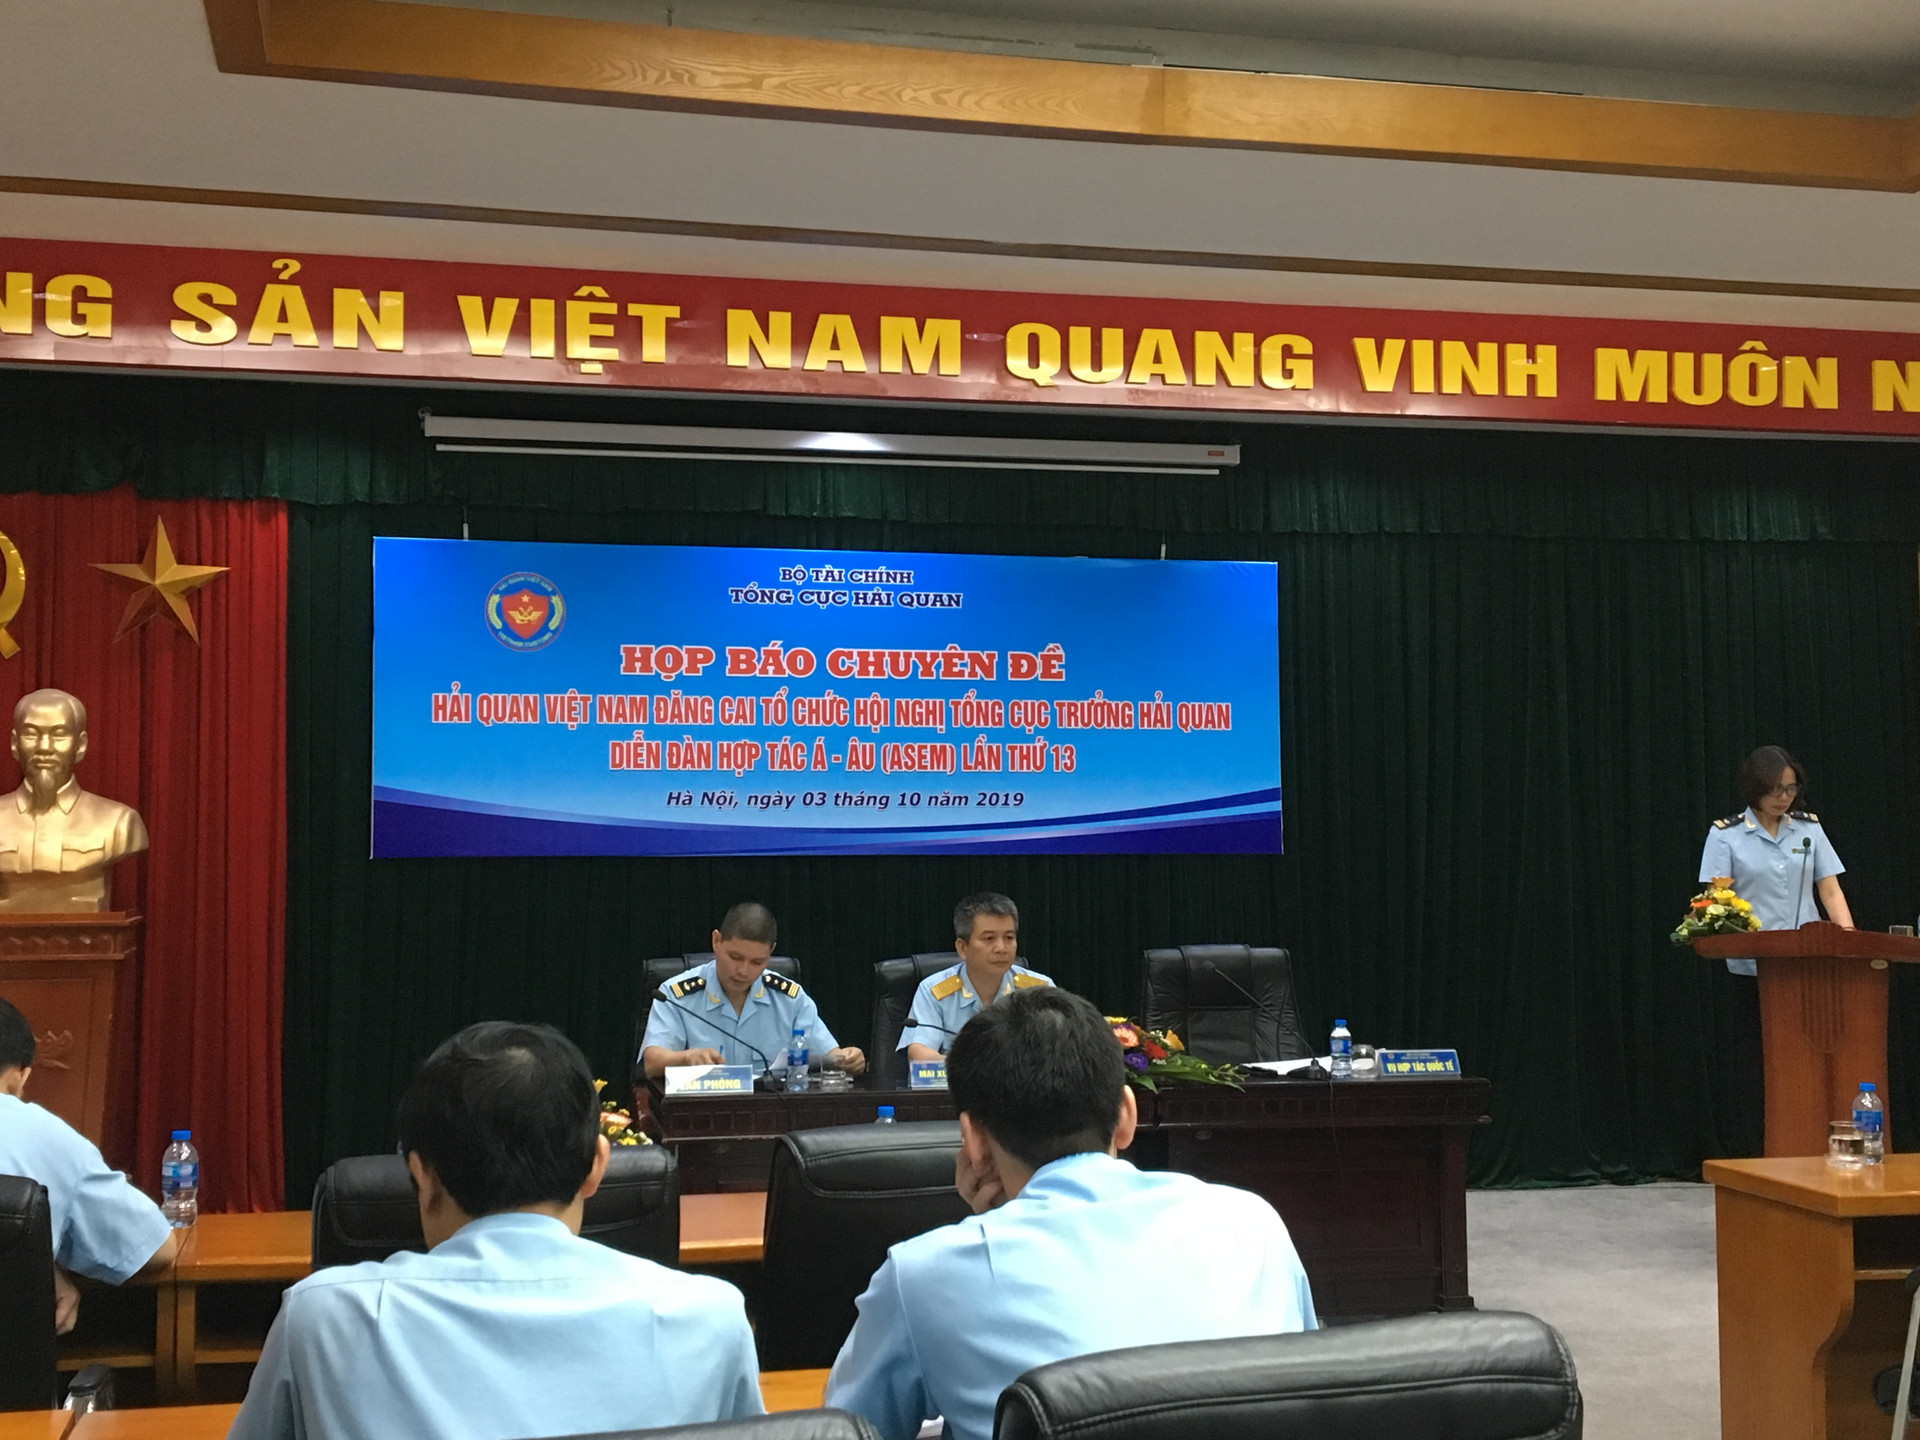 Hải quan Việt Nam đăng cai tổ chức Hội nghị Tổng cục trưởng Hải quan Diễn đàn Hợp tác Á - Âu (ASEM) lần thứ 13